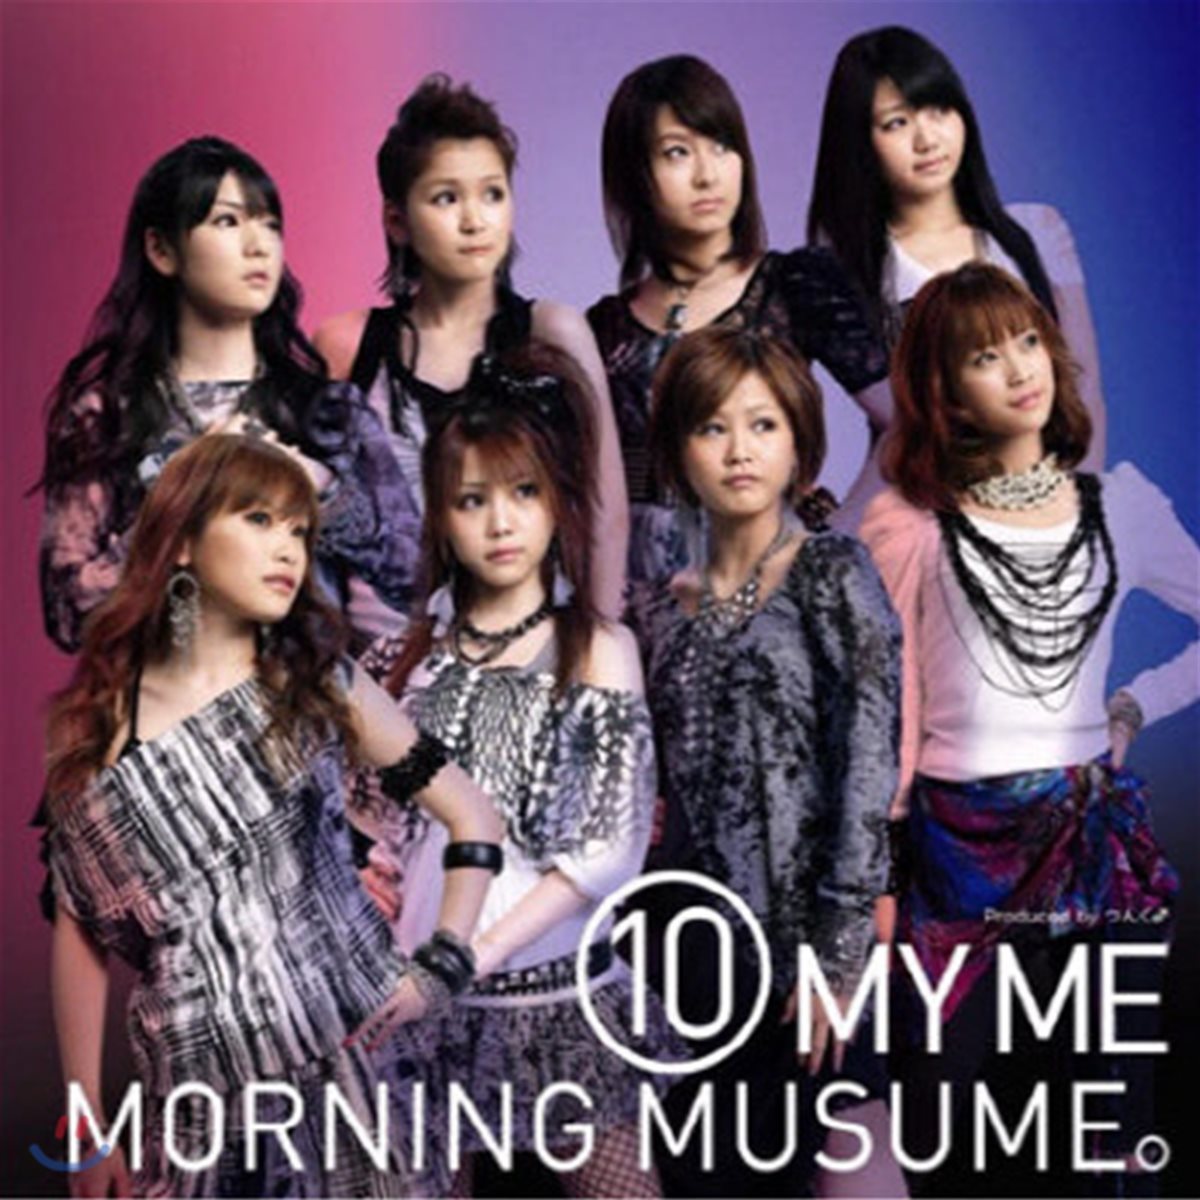 [중고] Morning Musume (모닝구 무스메) / 10 My Me